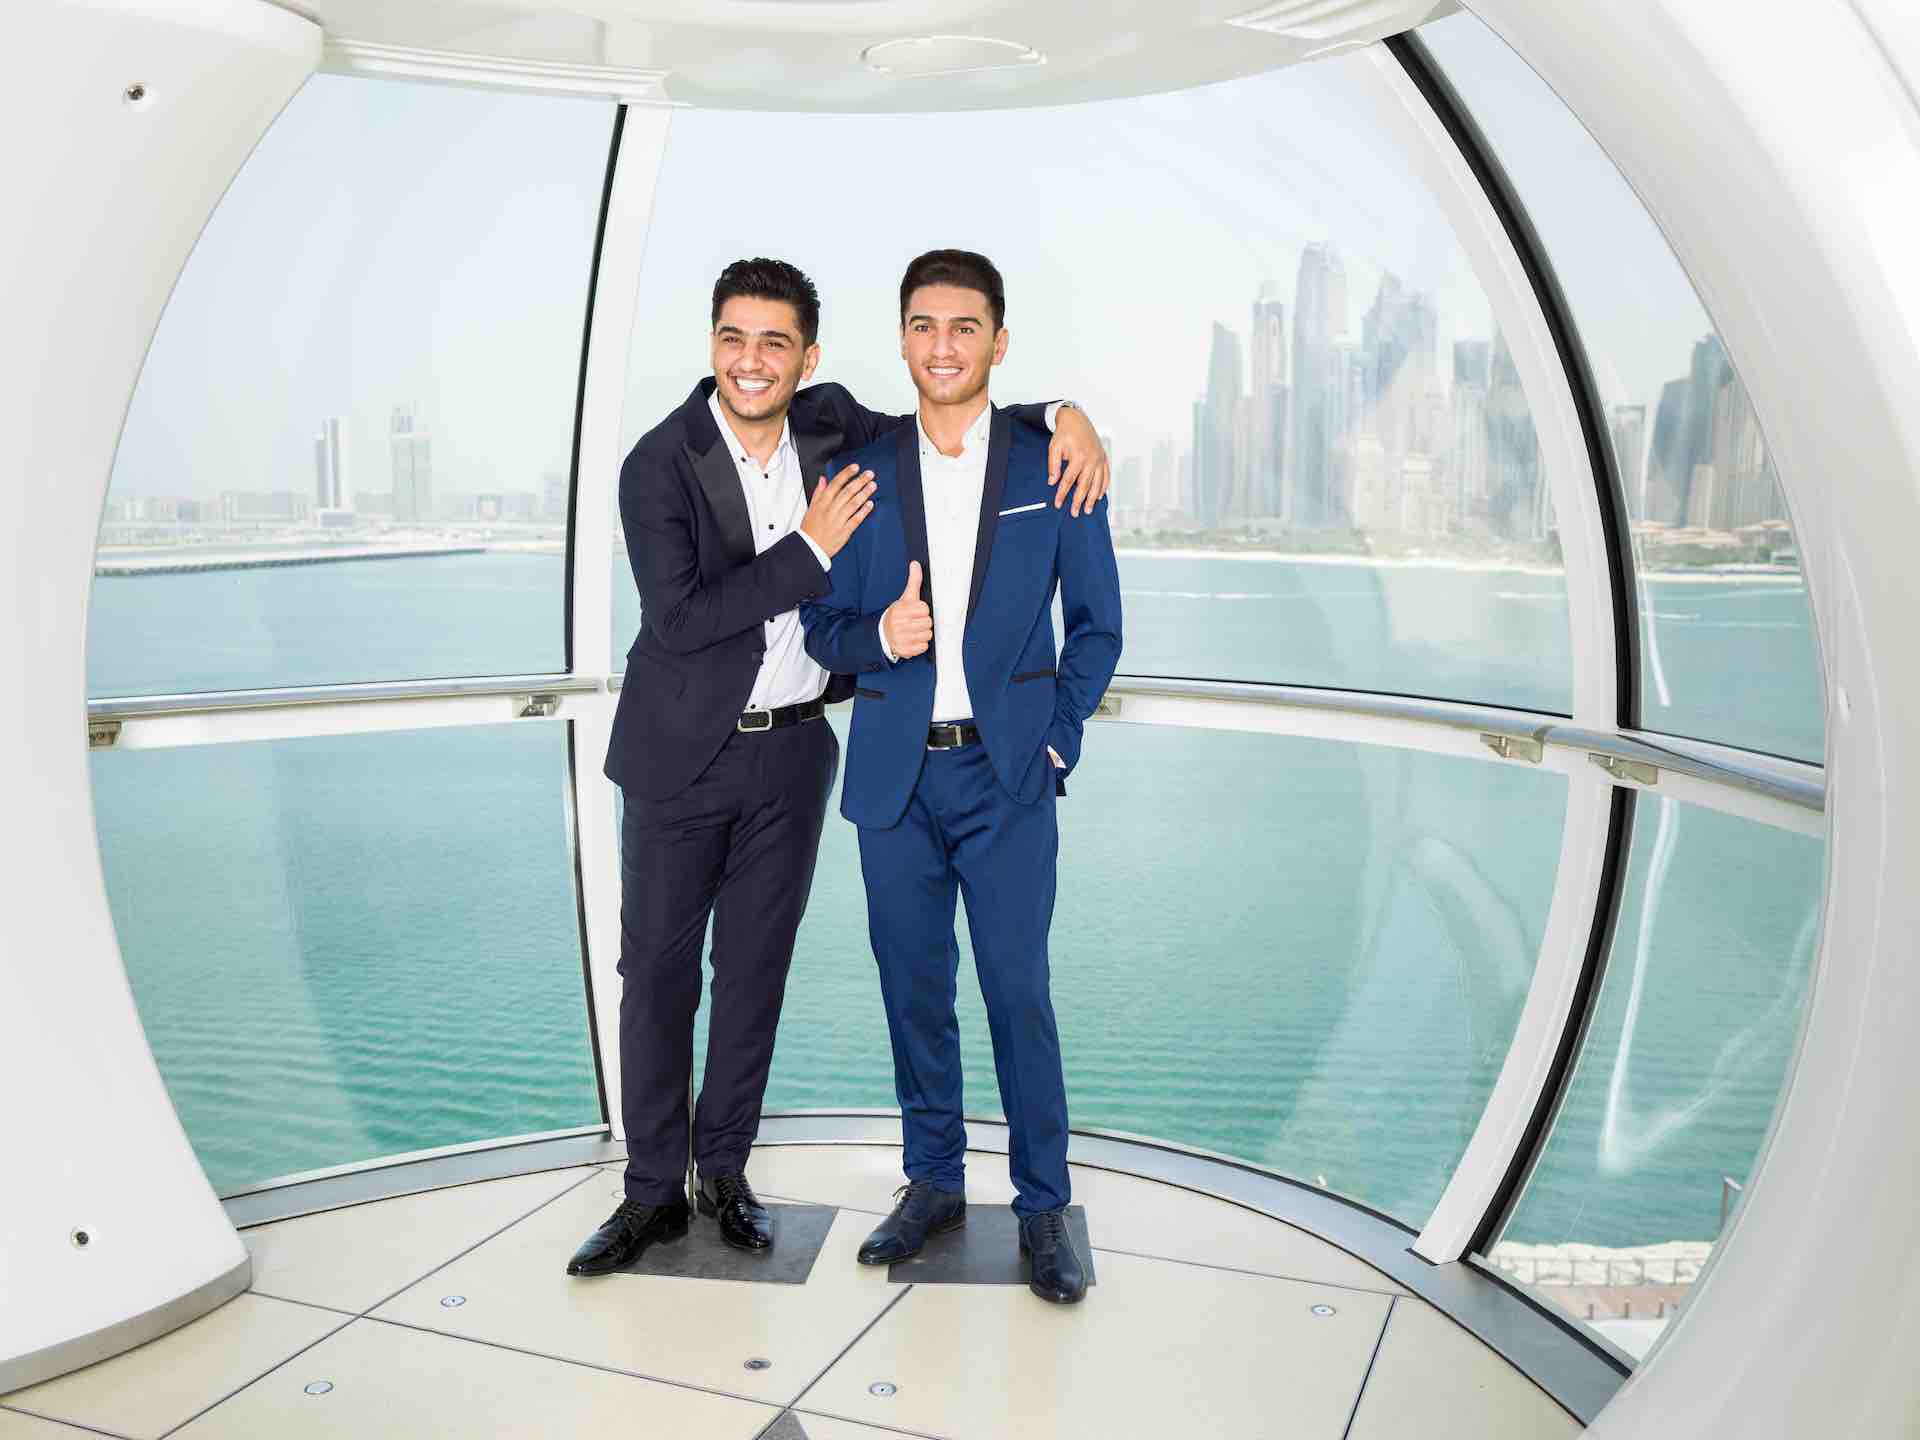 Κατέστη δυνατό να πραγματοποιηθούν τα πιο ακριβά όνειρα. Ο Άραβας αγαπημένος "Mohammed Assaf" ποπ σταρ μπαίνει στη λίστα διασημοτήτων του Madame Tussauds Dubai